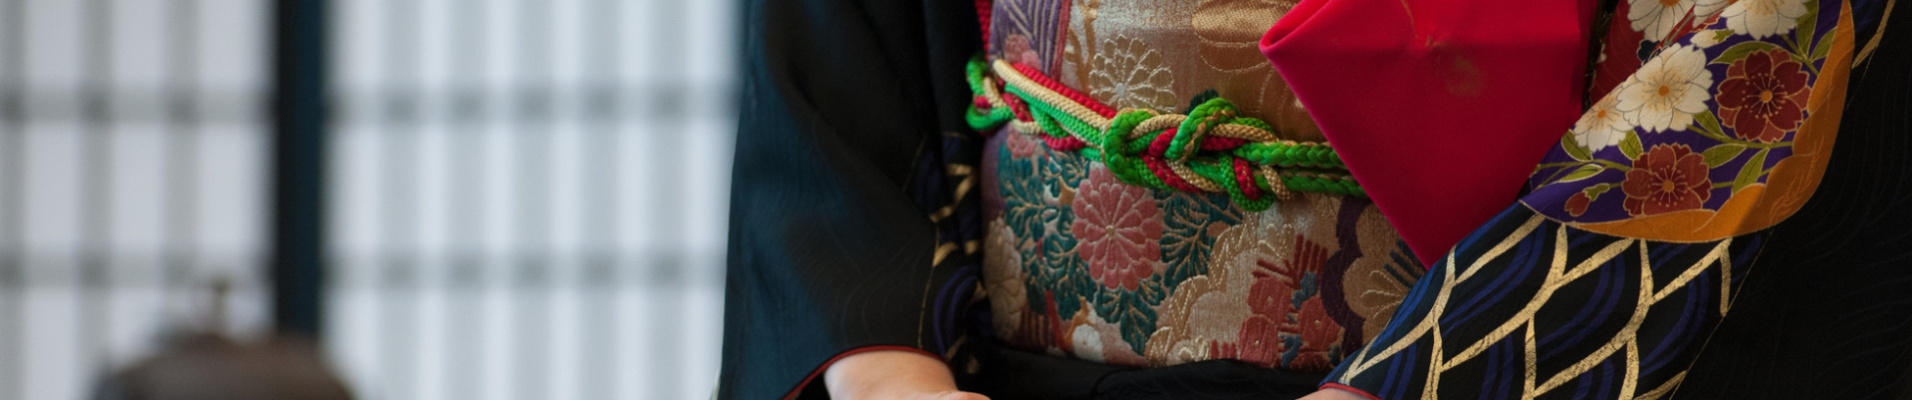 Femme en tenue tradtionelle pendant une cérémonie du thé